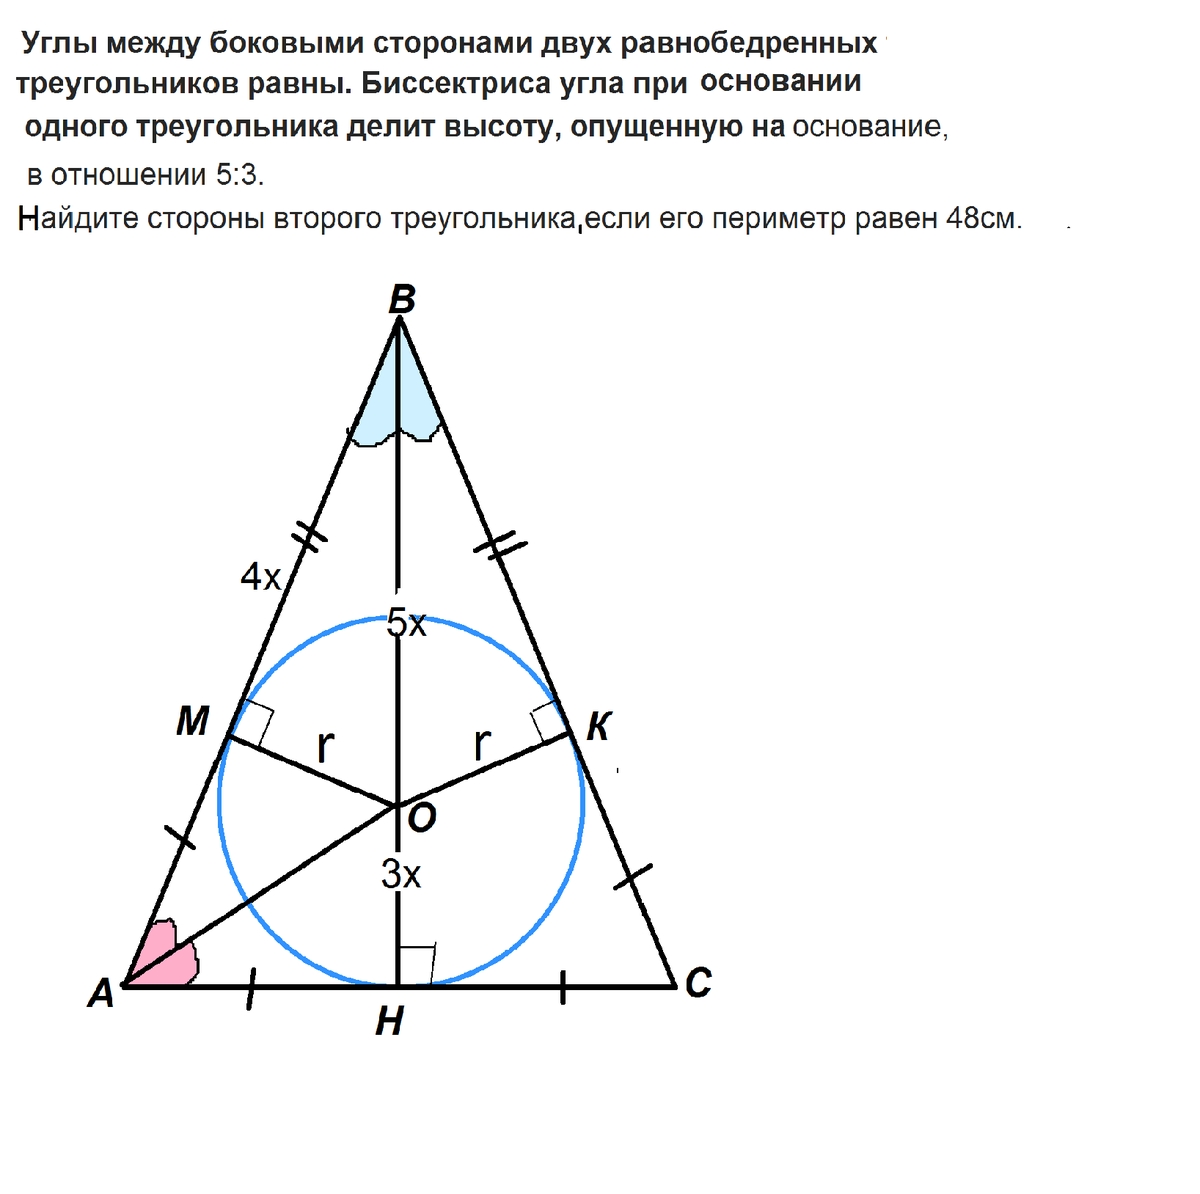 Биссектриса и высота в равнобедренном треугольнике. Биссектриса угла при основании равнобедренного треугольника. Биссектриса при основании равнобедренного треугольника. Высота равнобедренного треугольника при основании делится на. Сколько равны углы в равнобедренном треугольнике